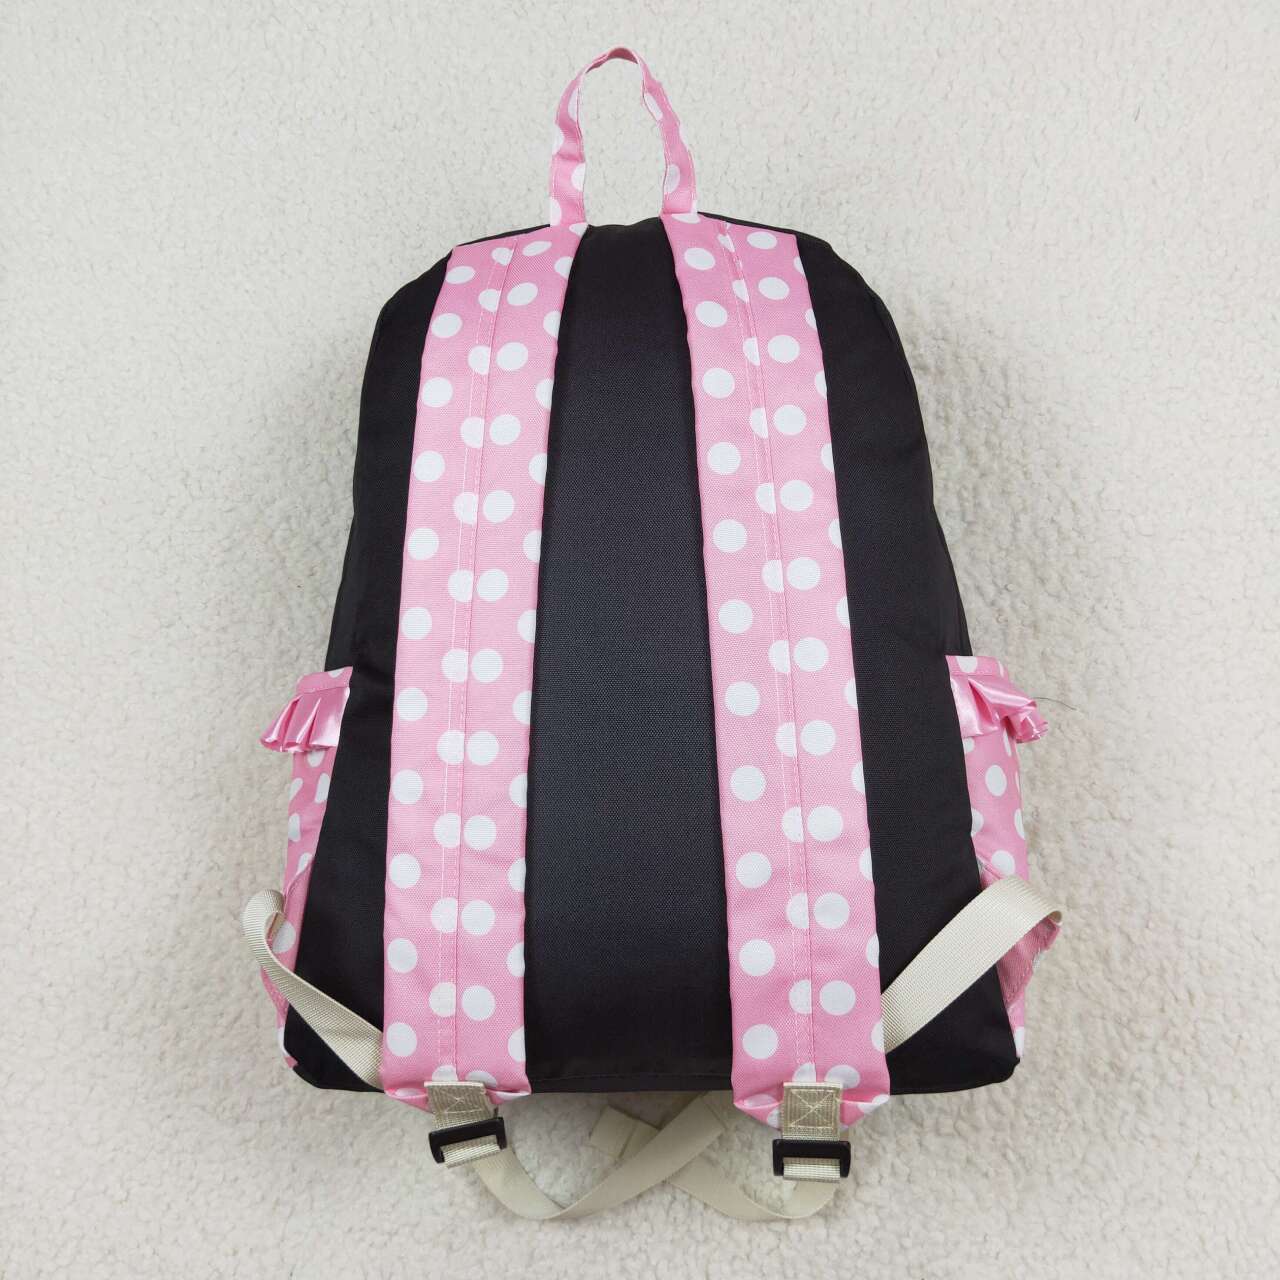 RTS no moq BA0183 Polka Dot Pink and Black Backpack